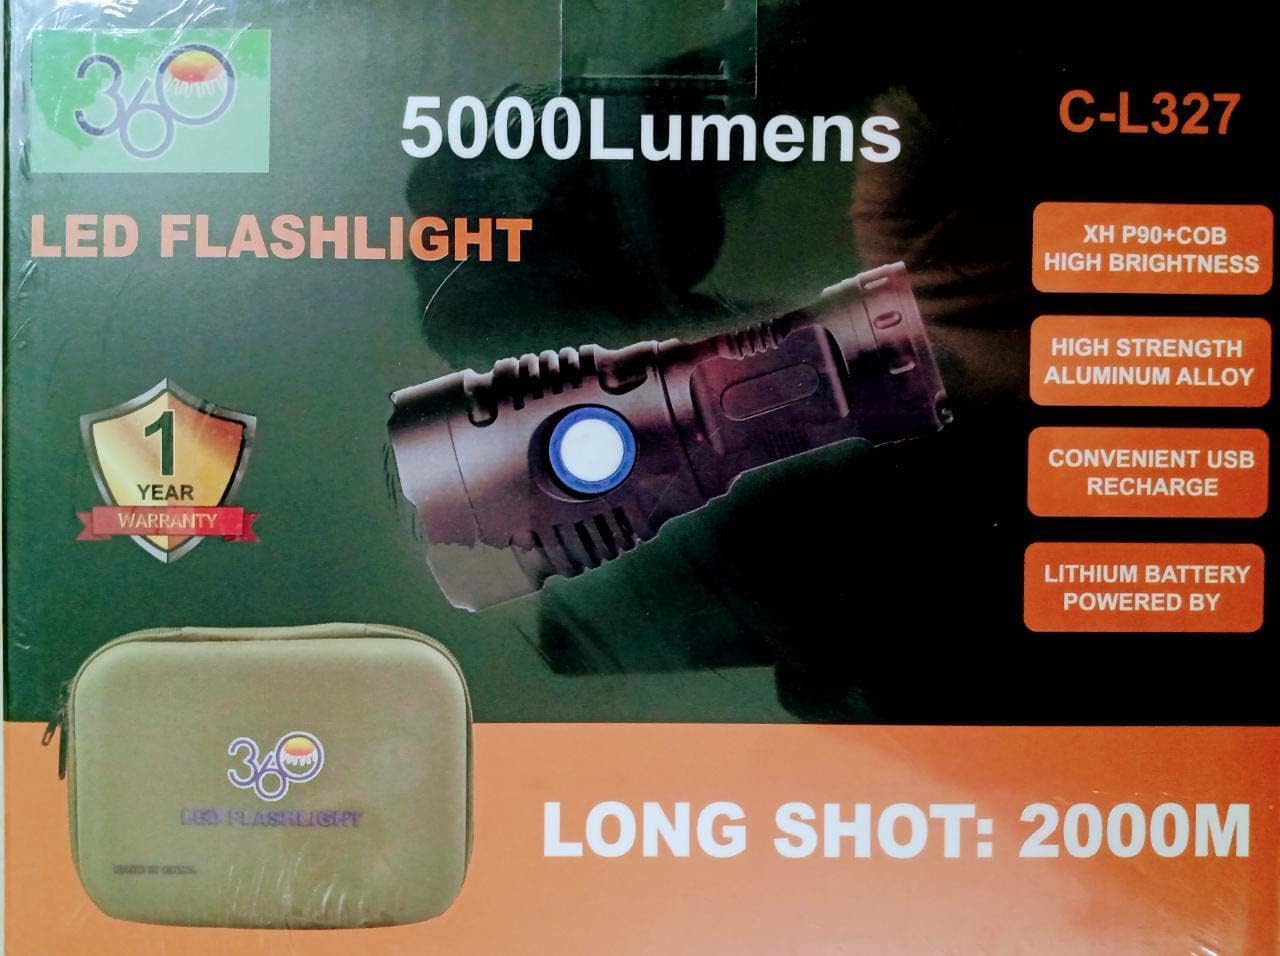 2km Long-Range Flash Light C-L327